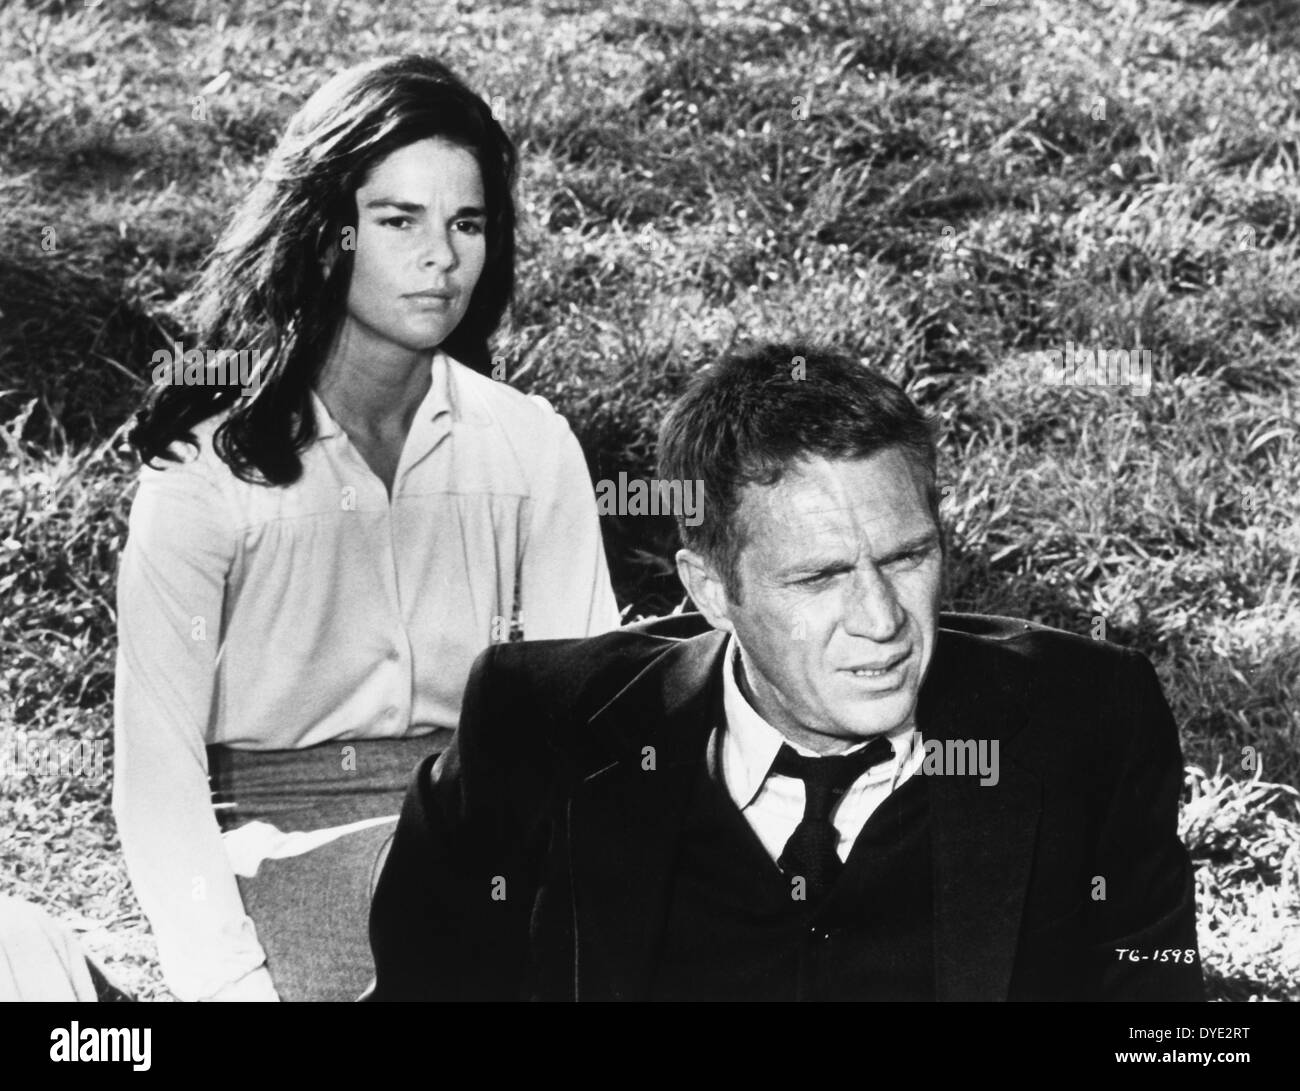 Ali MacGraw e Steve McQueen, sul set del film "The Getaway', 1972 Foto Stock